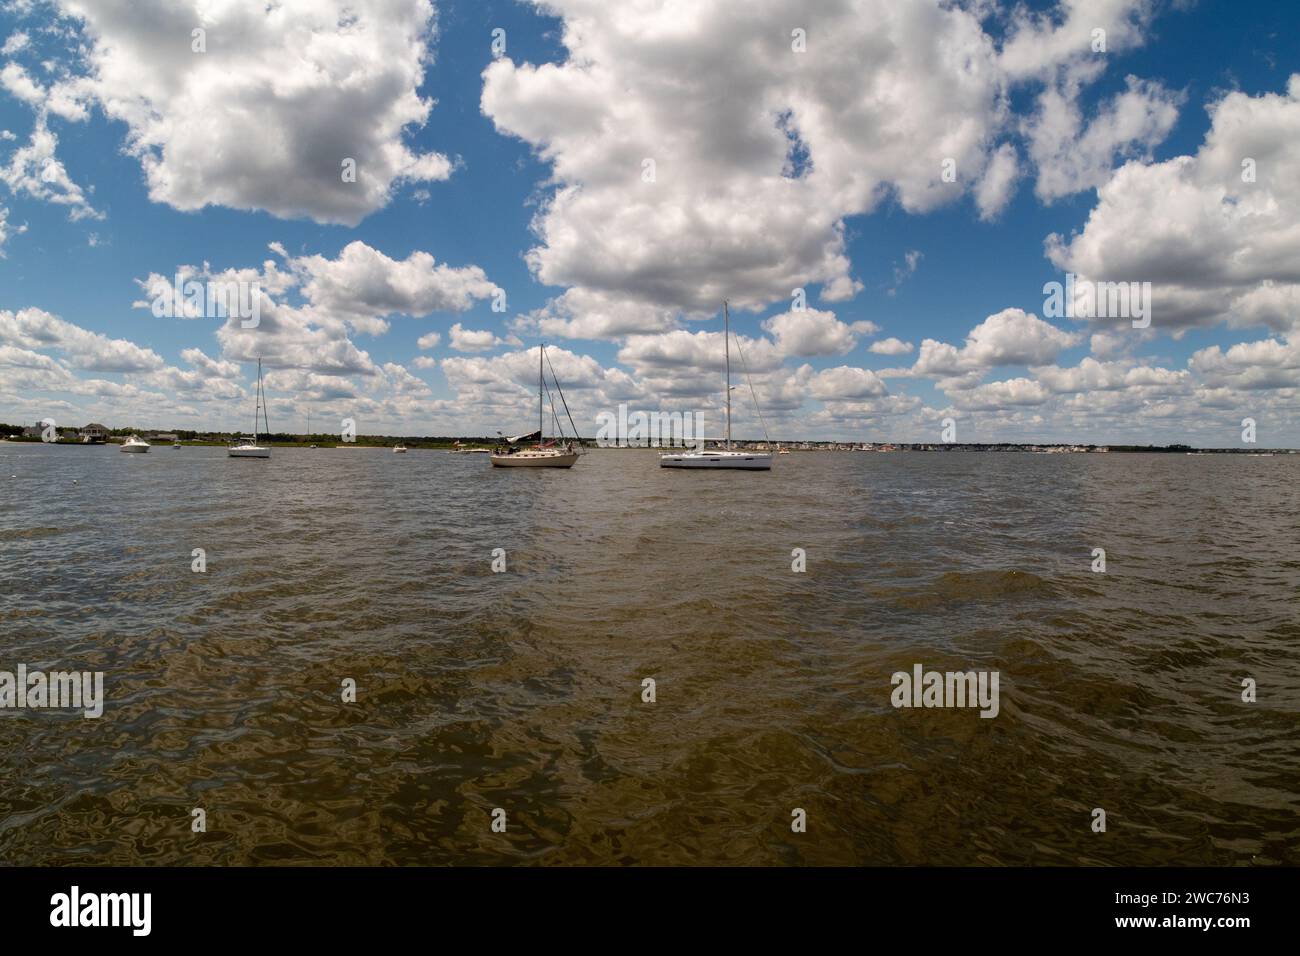 Dieses atemberaubende Foto zeigt die ruhige Schönheit eines Sees mit drei Booten, die anmutig über das glitzernde Wasser gleiten Stockfoto